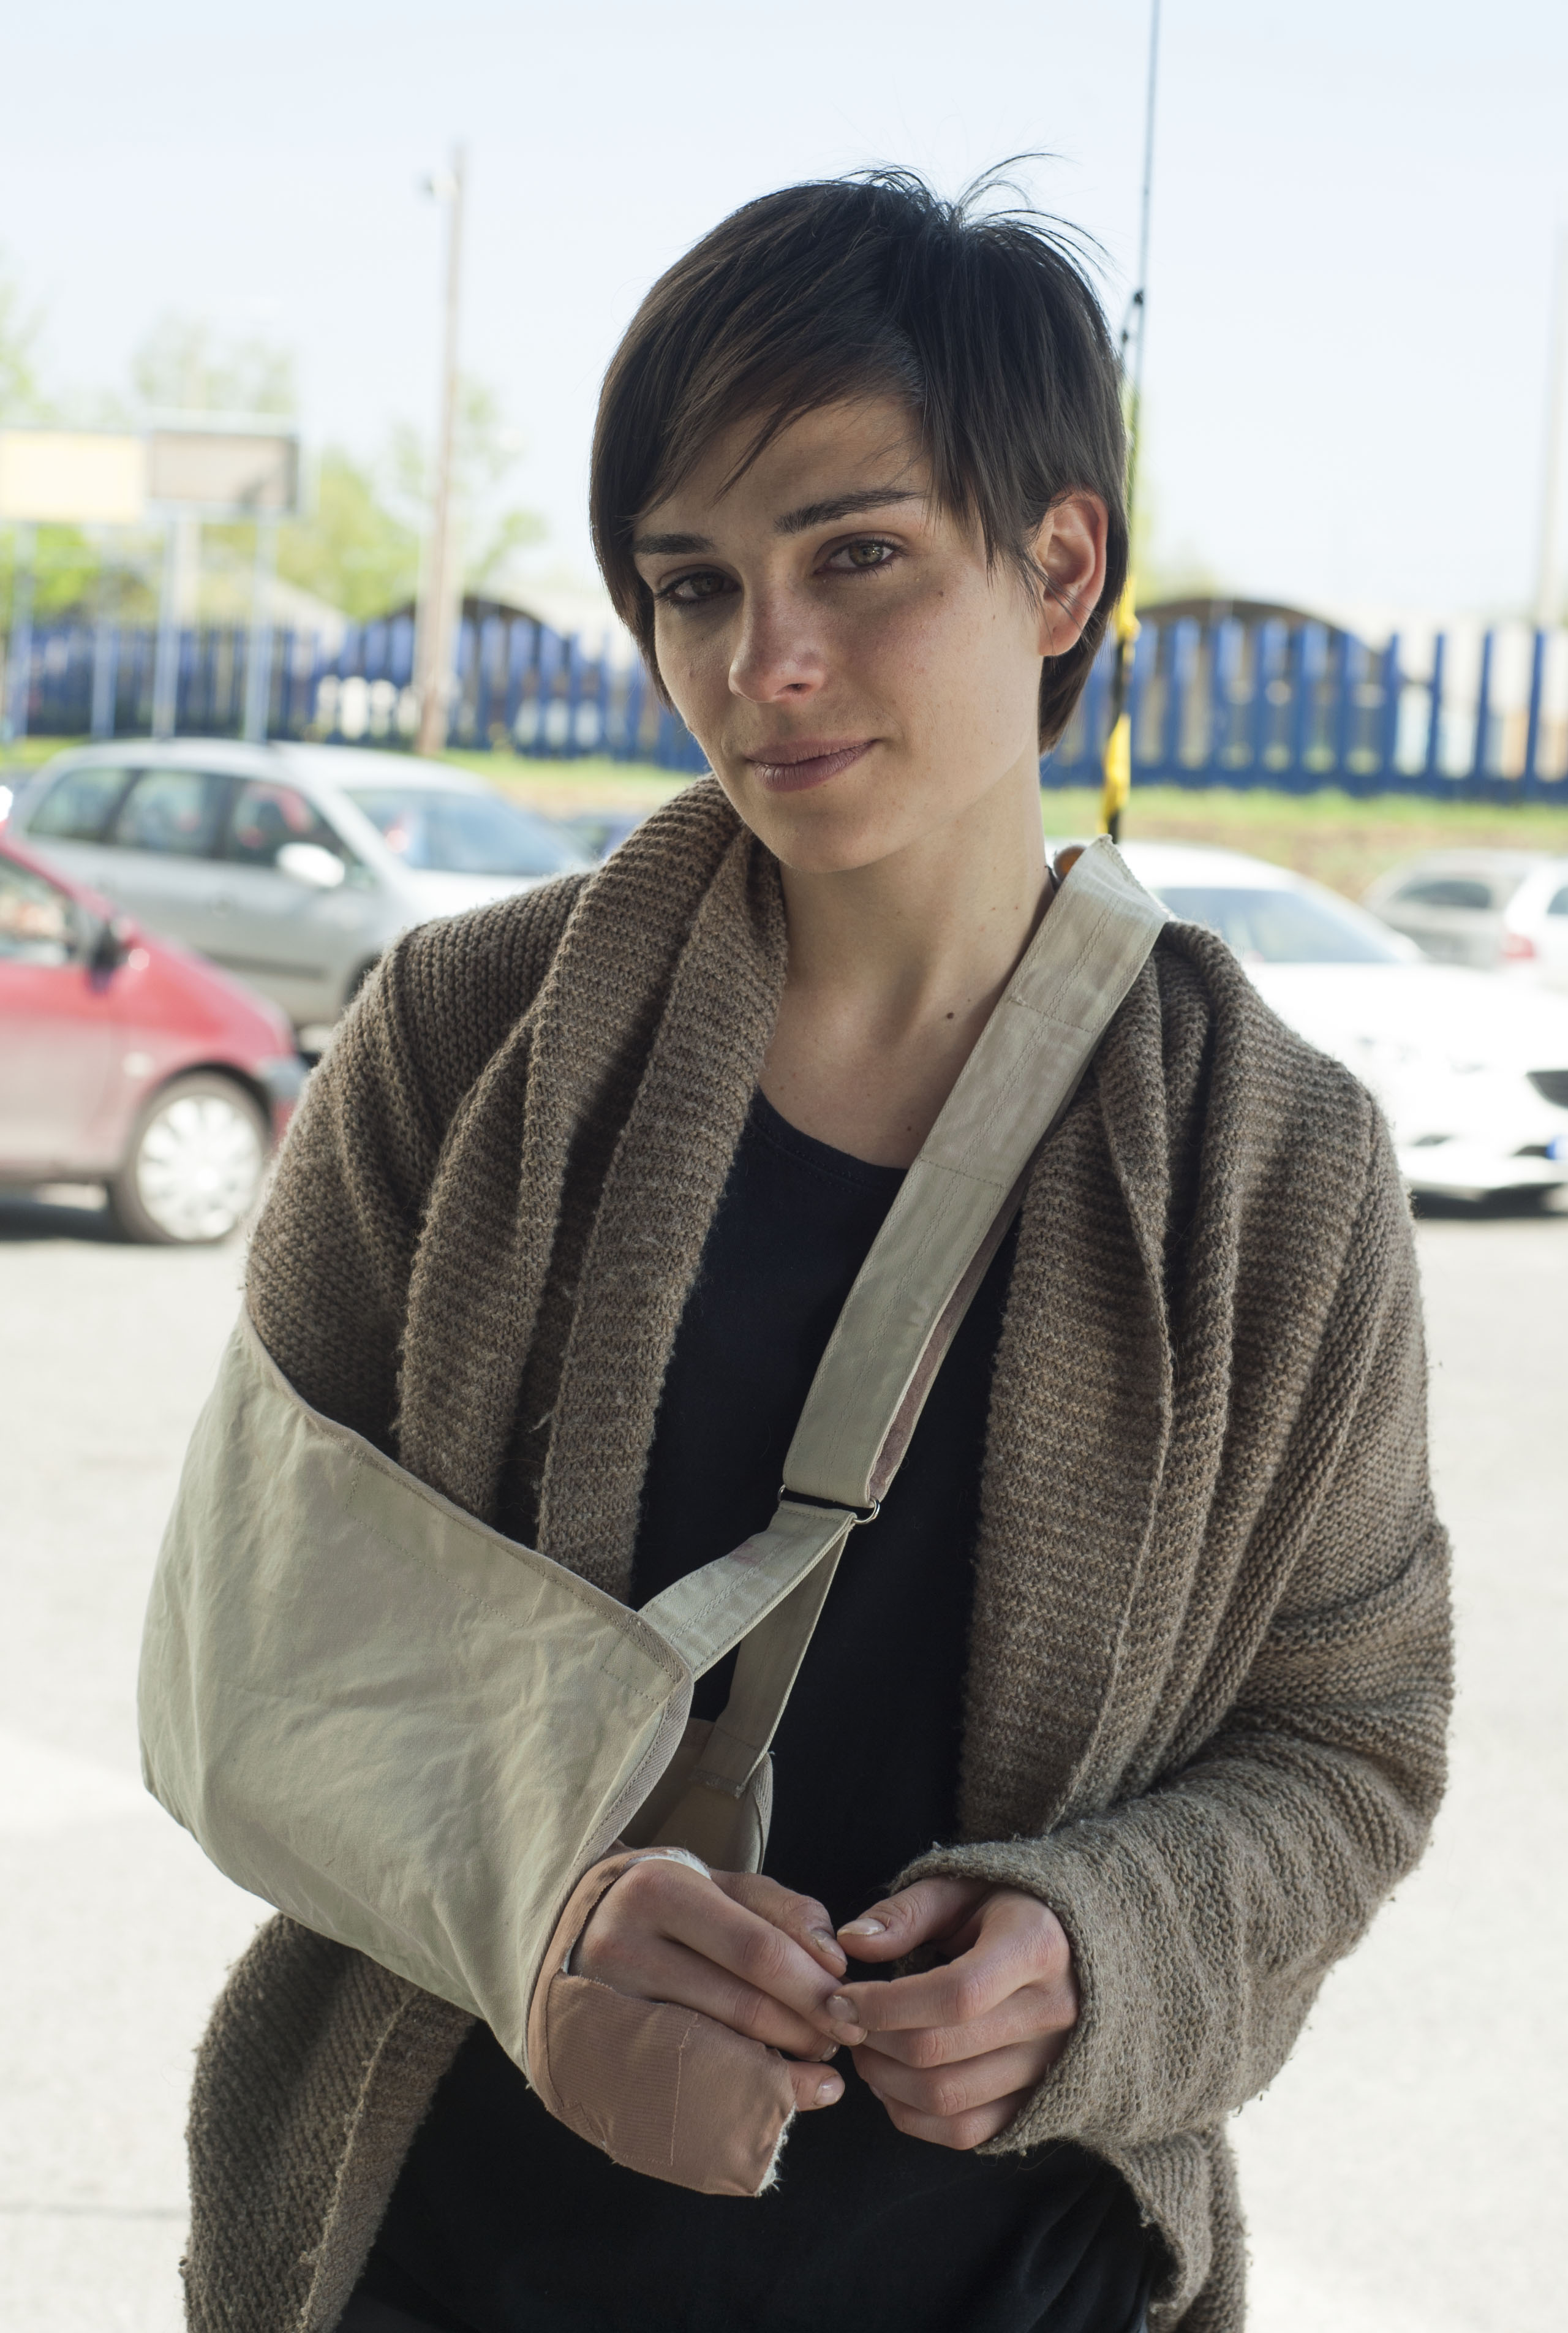 Forgatás közben törte el a kezét Legerszki Krisztina - fotó